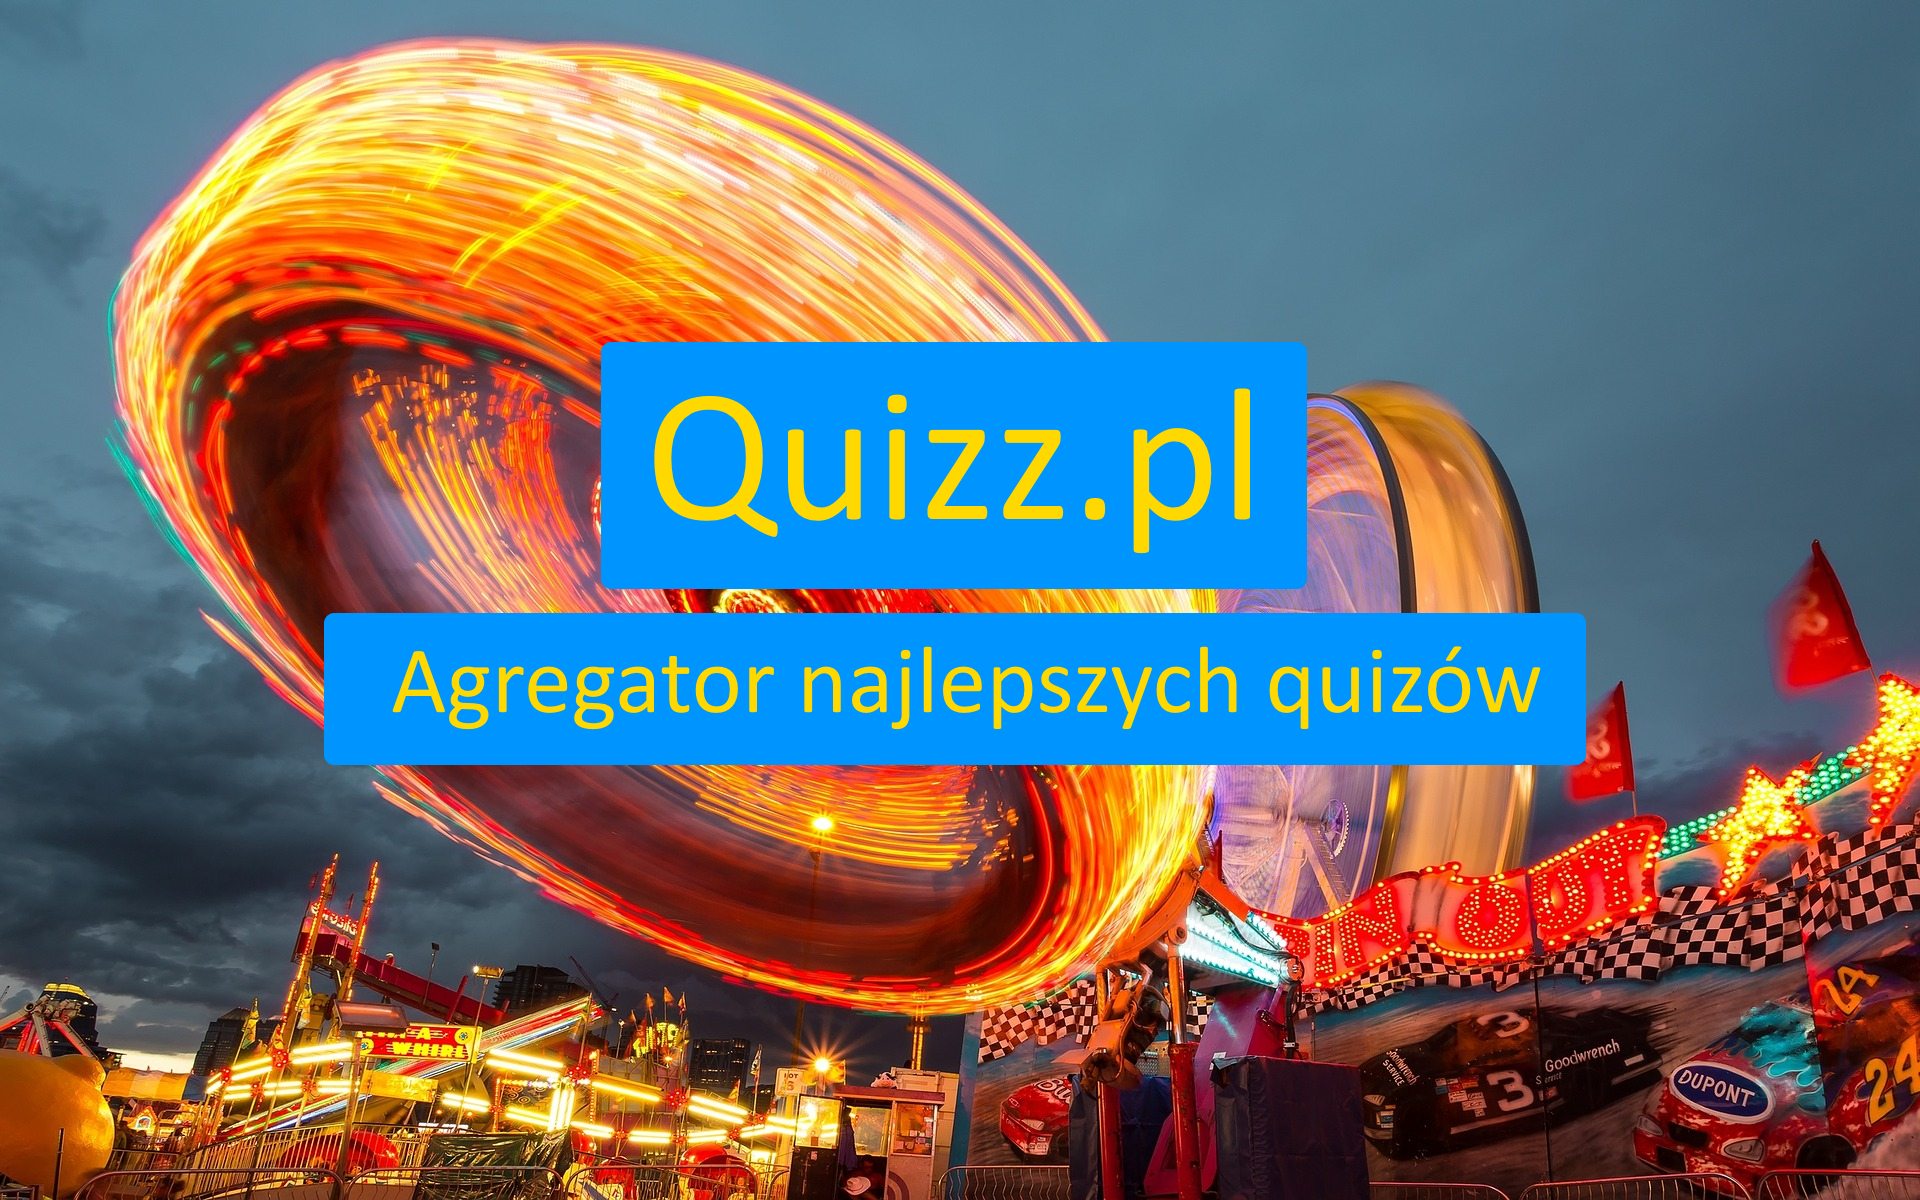 Przyszłość - bezpłatne quizy, testy wiedzy i ankiety - www.quizz.pl